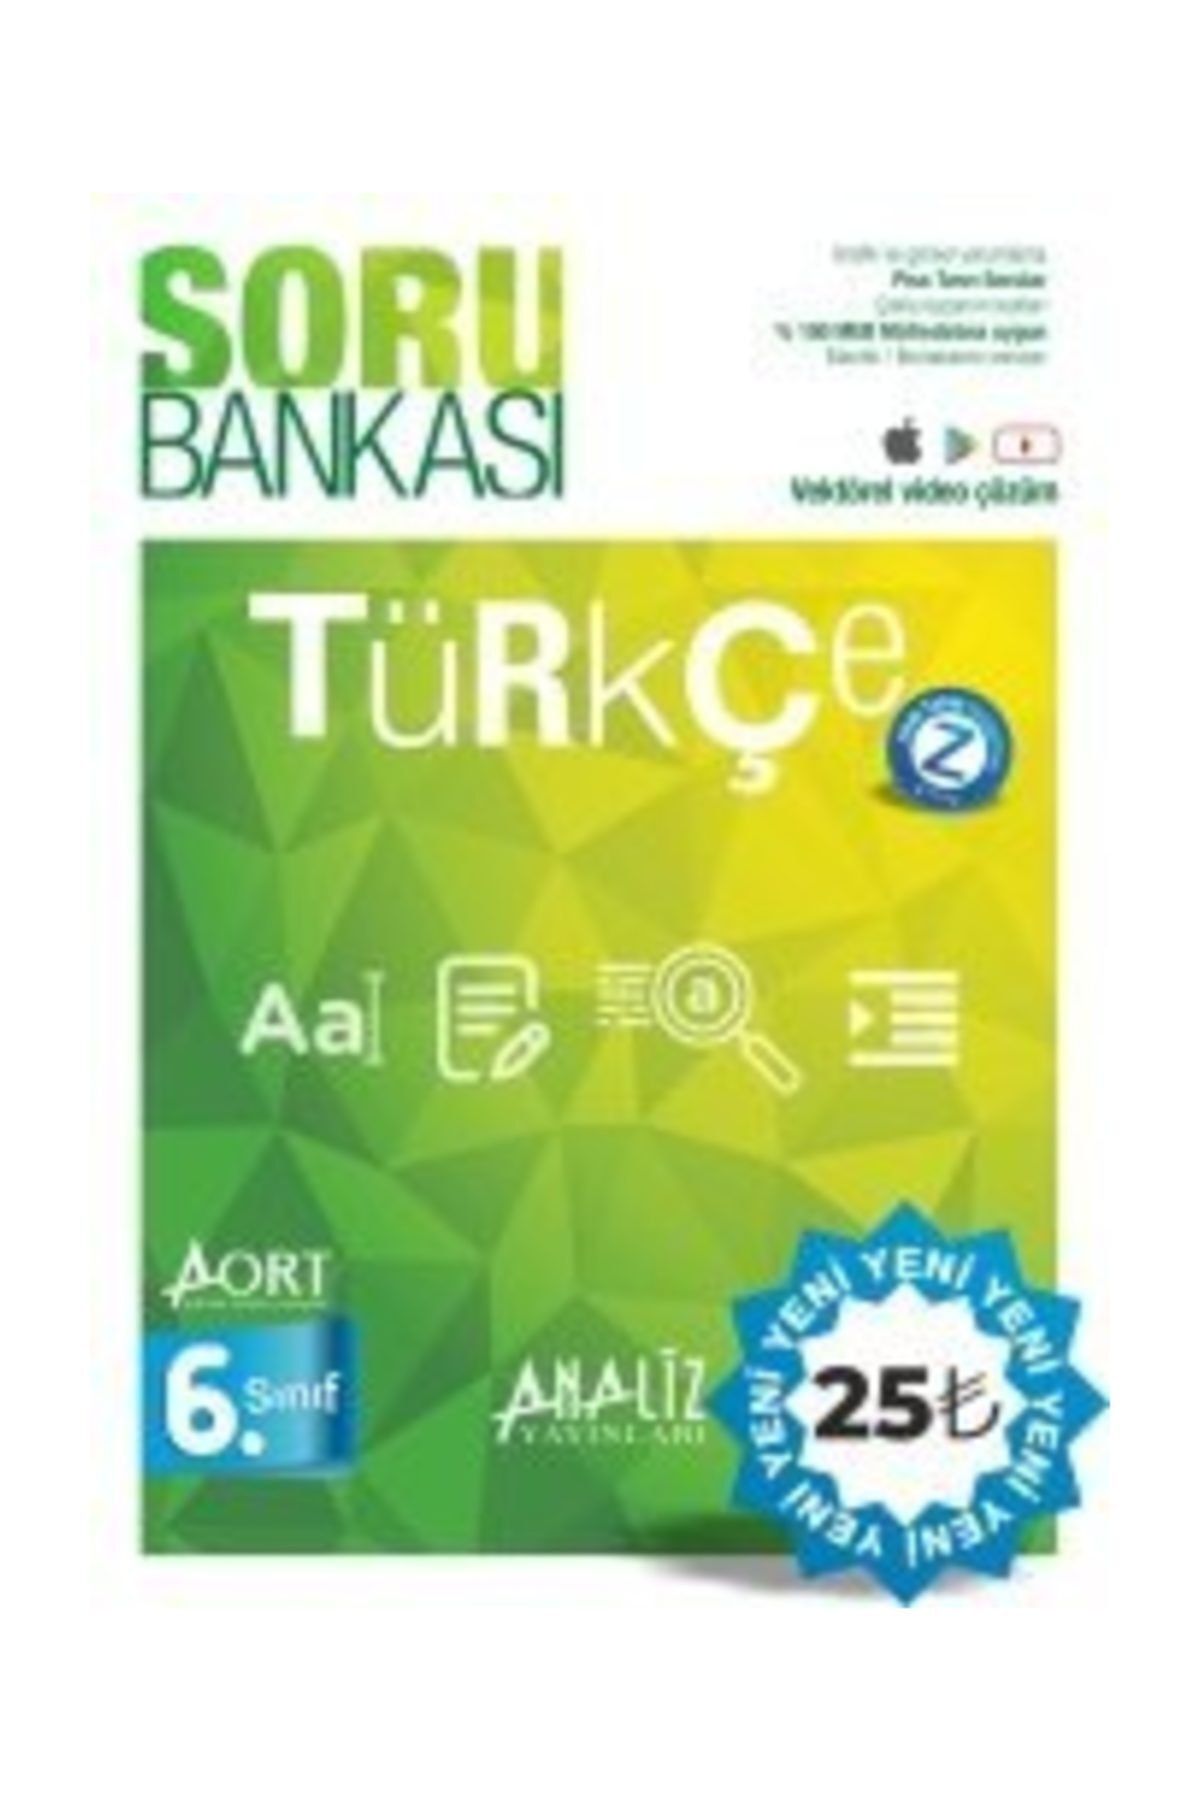 Analiz Yayınları 6.Sınıf Türkçe Matematik Fen Bilimleri Sosyal Bilgiler 2020 Soru Bankası